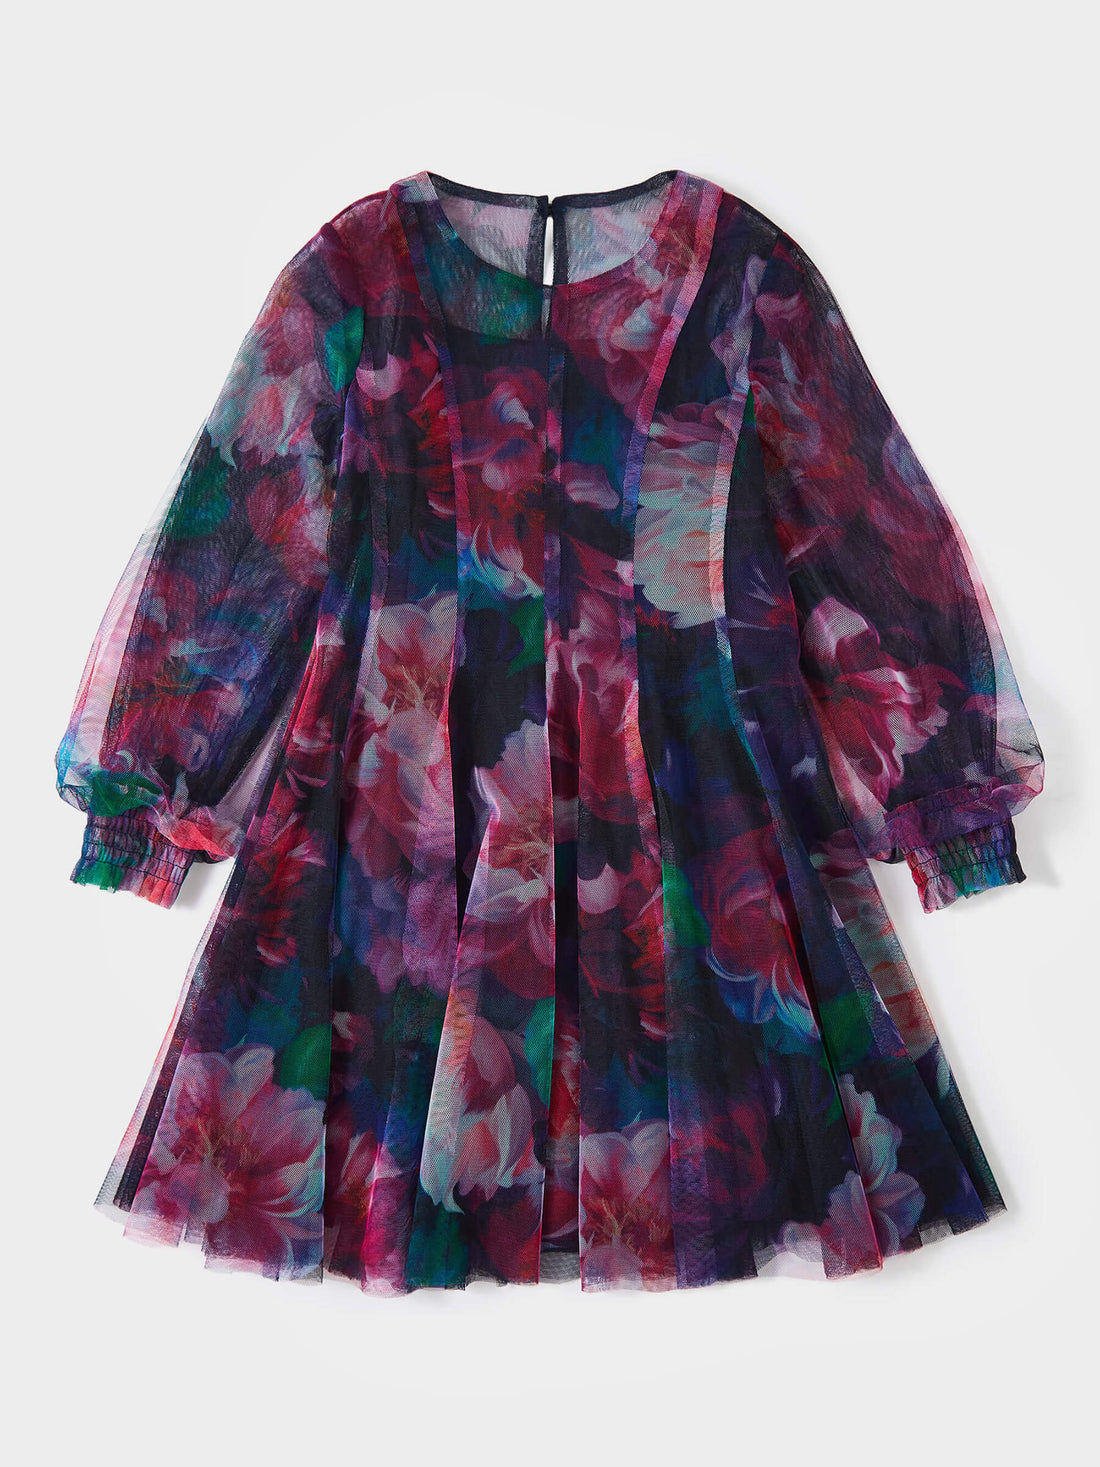 Sofie Ashbee Mesh Printed Dress | GWD Fashion